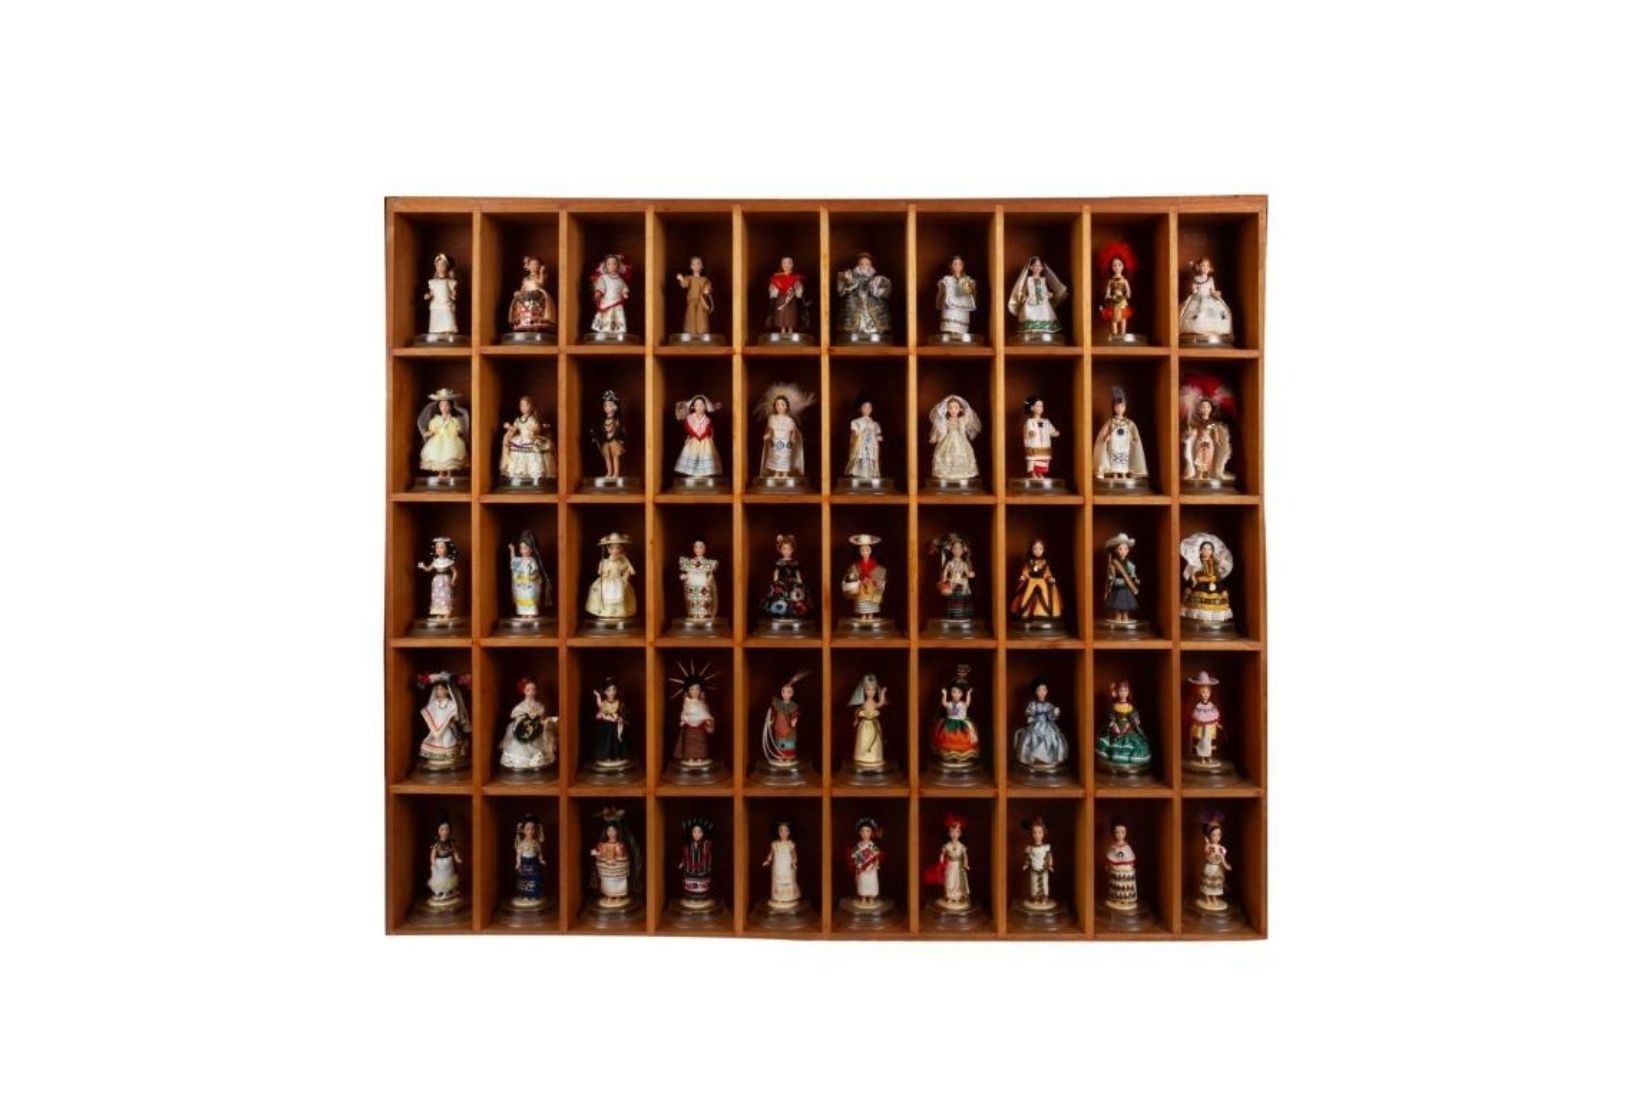 Colección de muñecas miniatura con trajes regionales. Artesano y procedencia desconocidos. Col. Bruno Newman, pieza donada a AmigosMAP. (Foto: EKV).